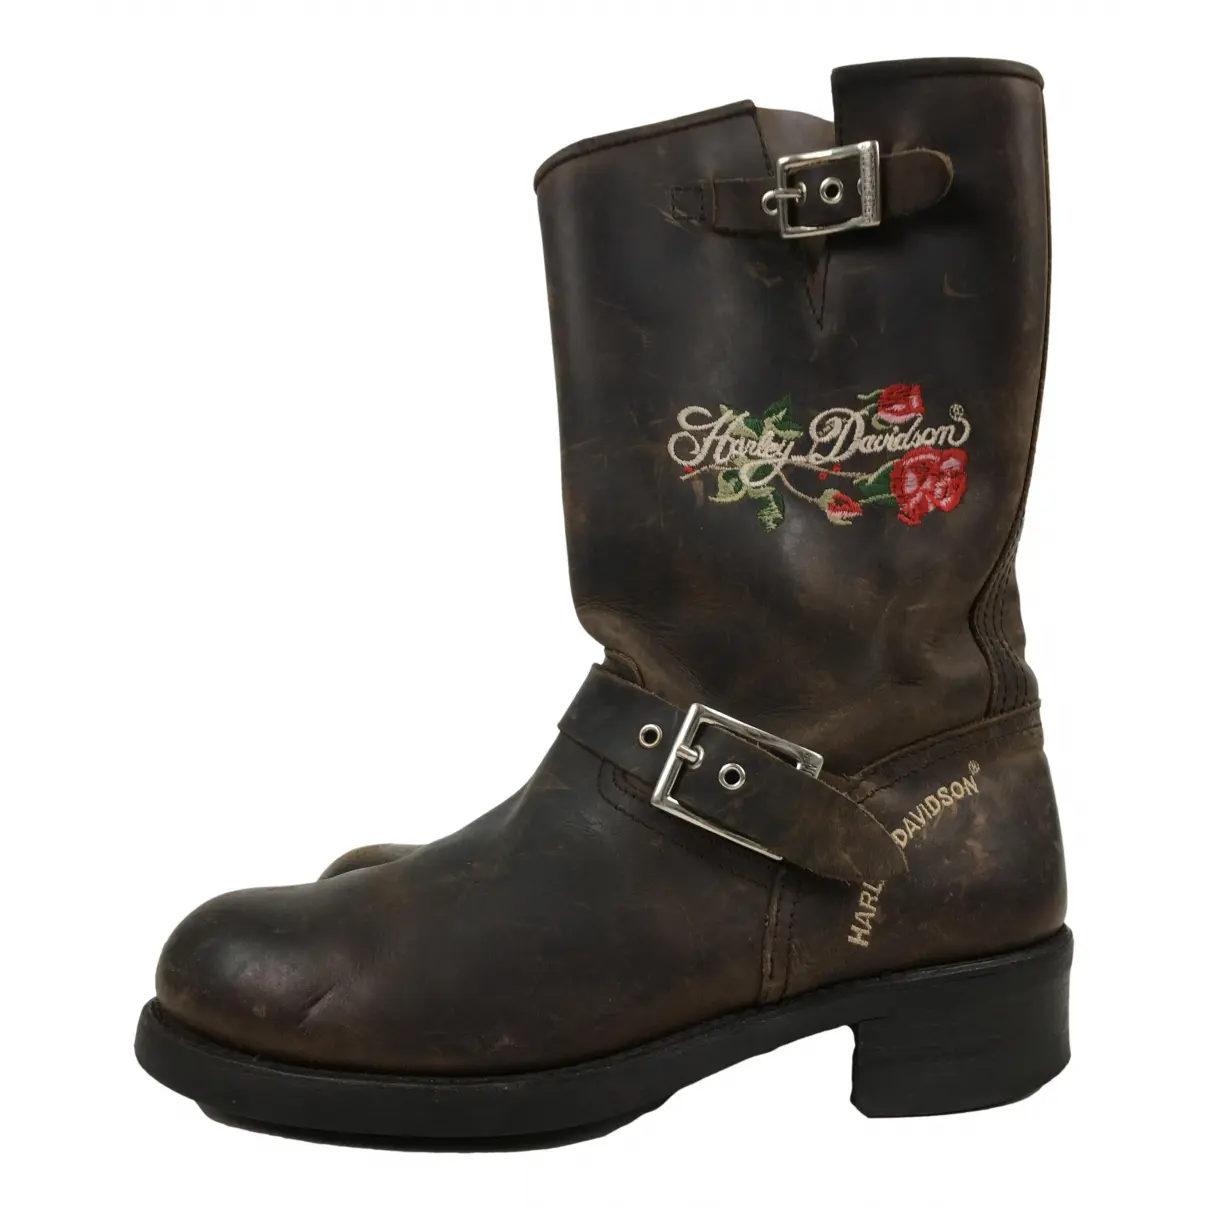 Leather ankle boots HARLEY DAVIDSON - Vintage